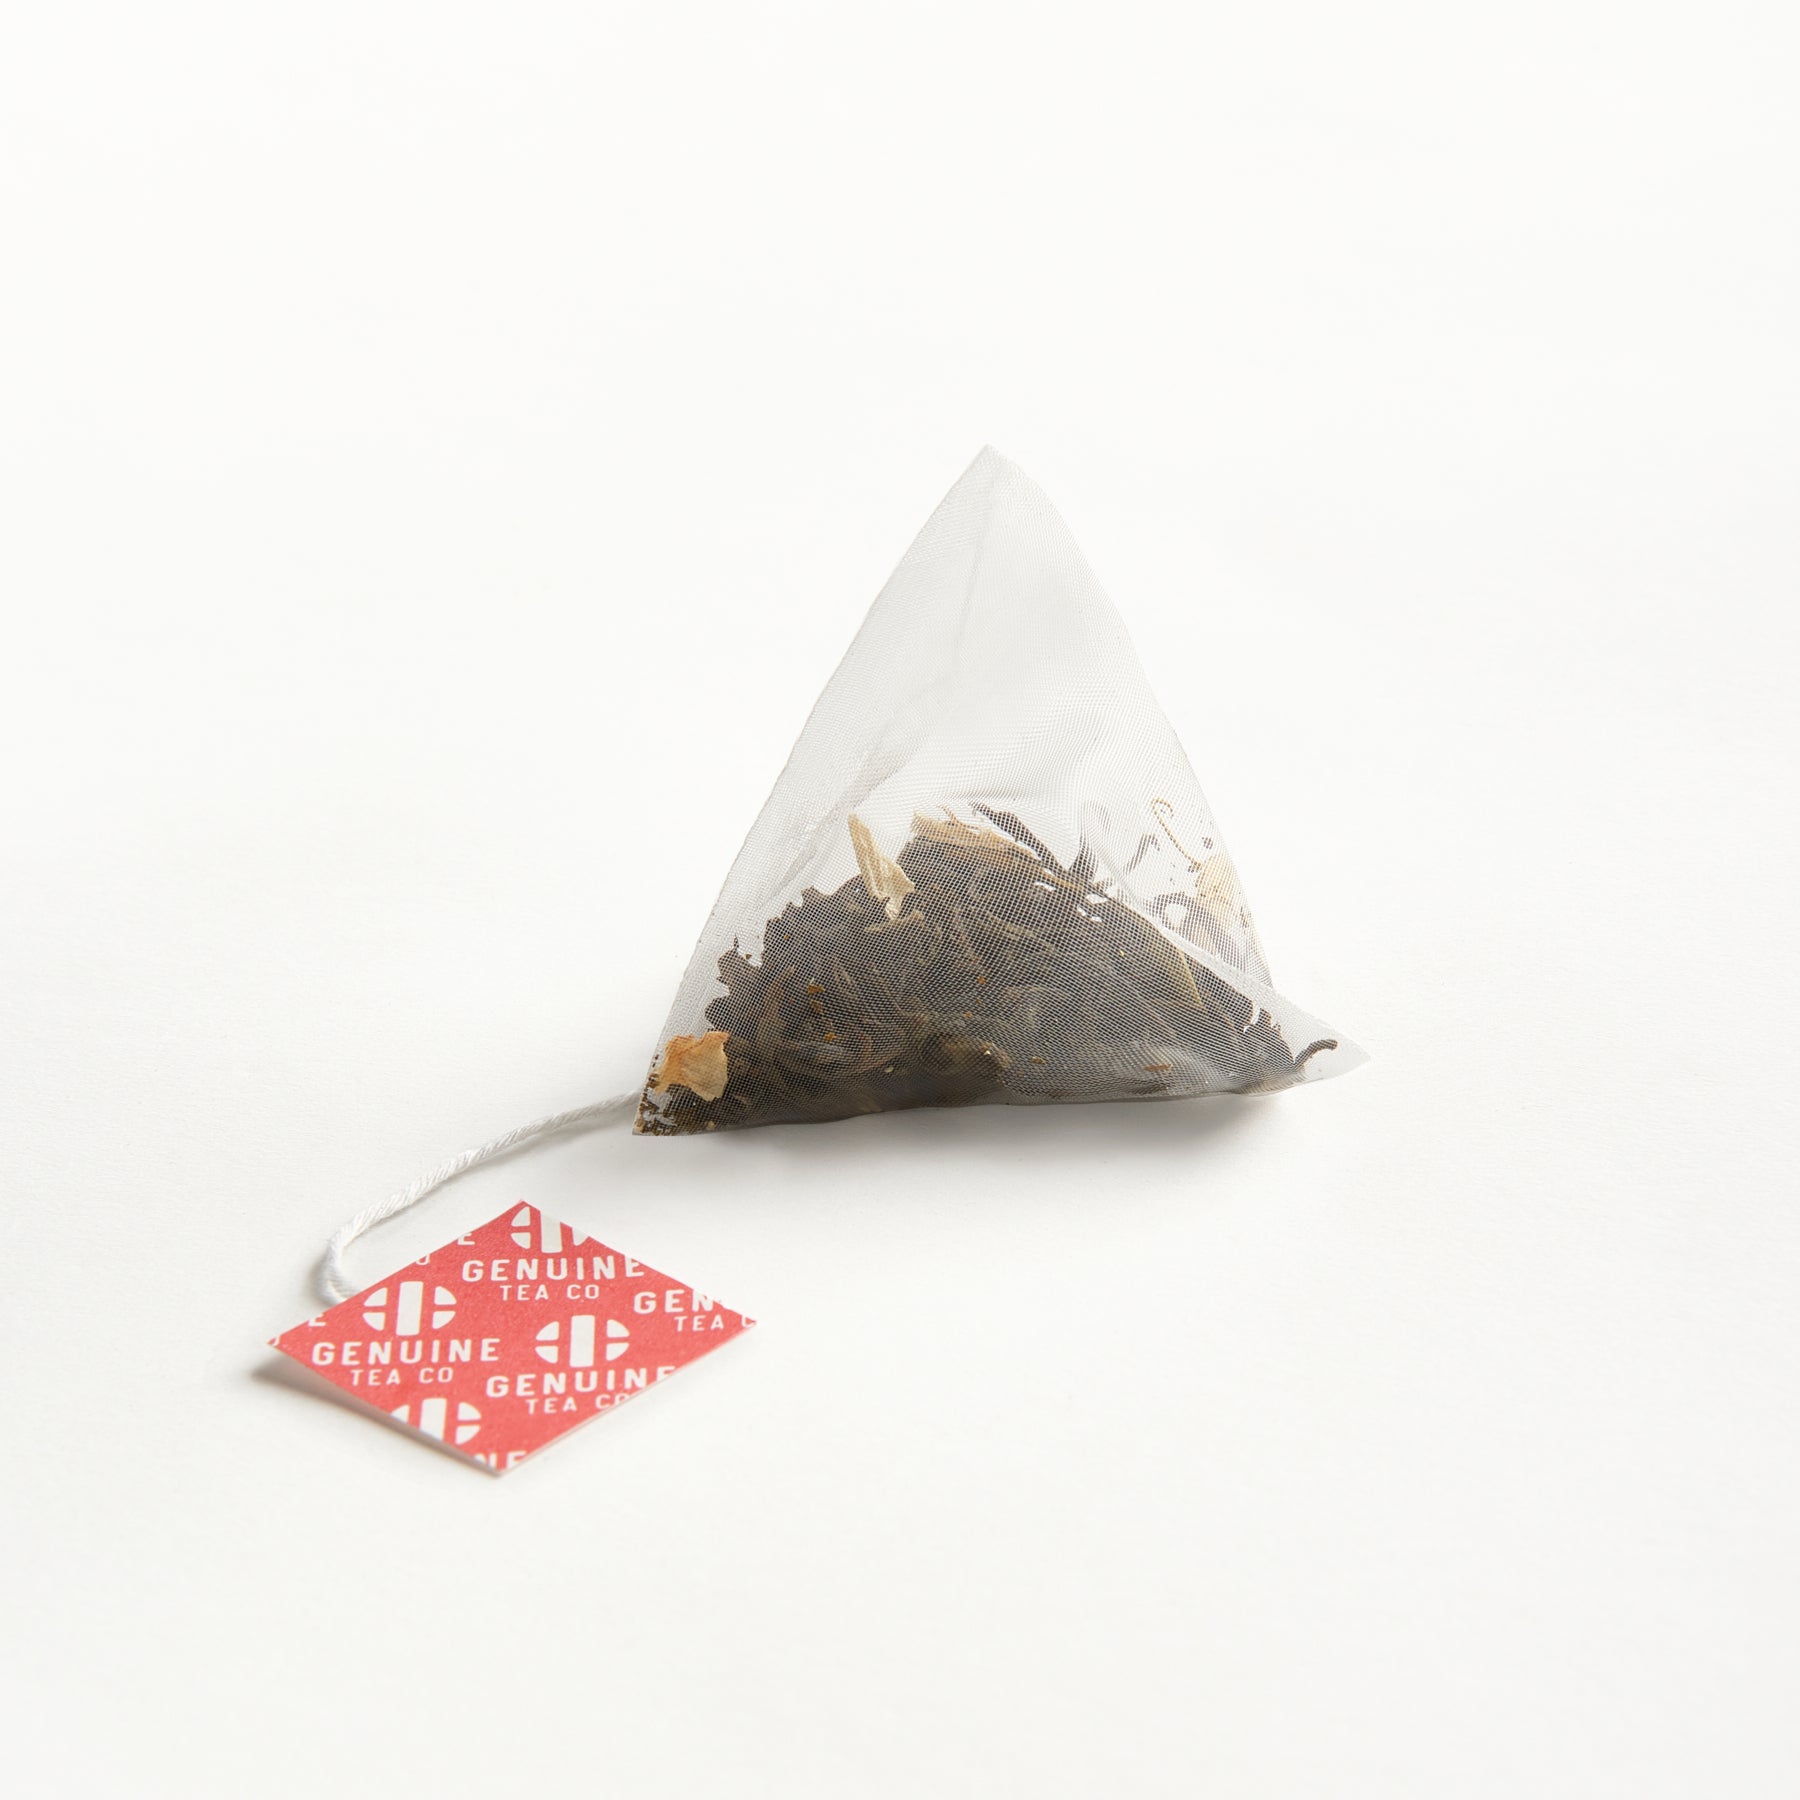 Premium Jasmine Biodegradable Plant-based Pyramid Tea Bags Looseleaf Toronto Canada